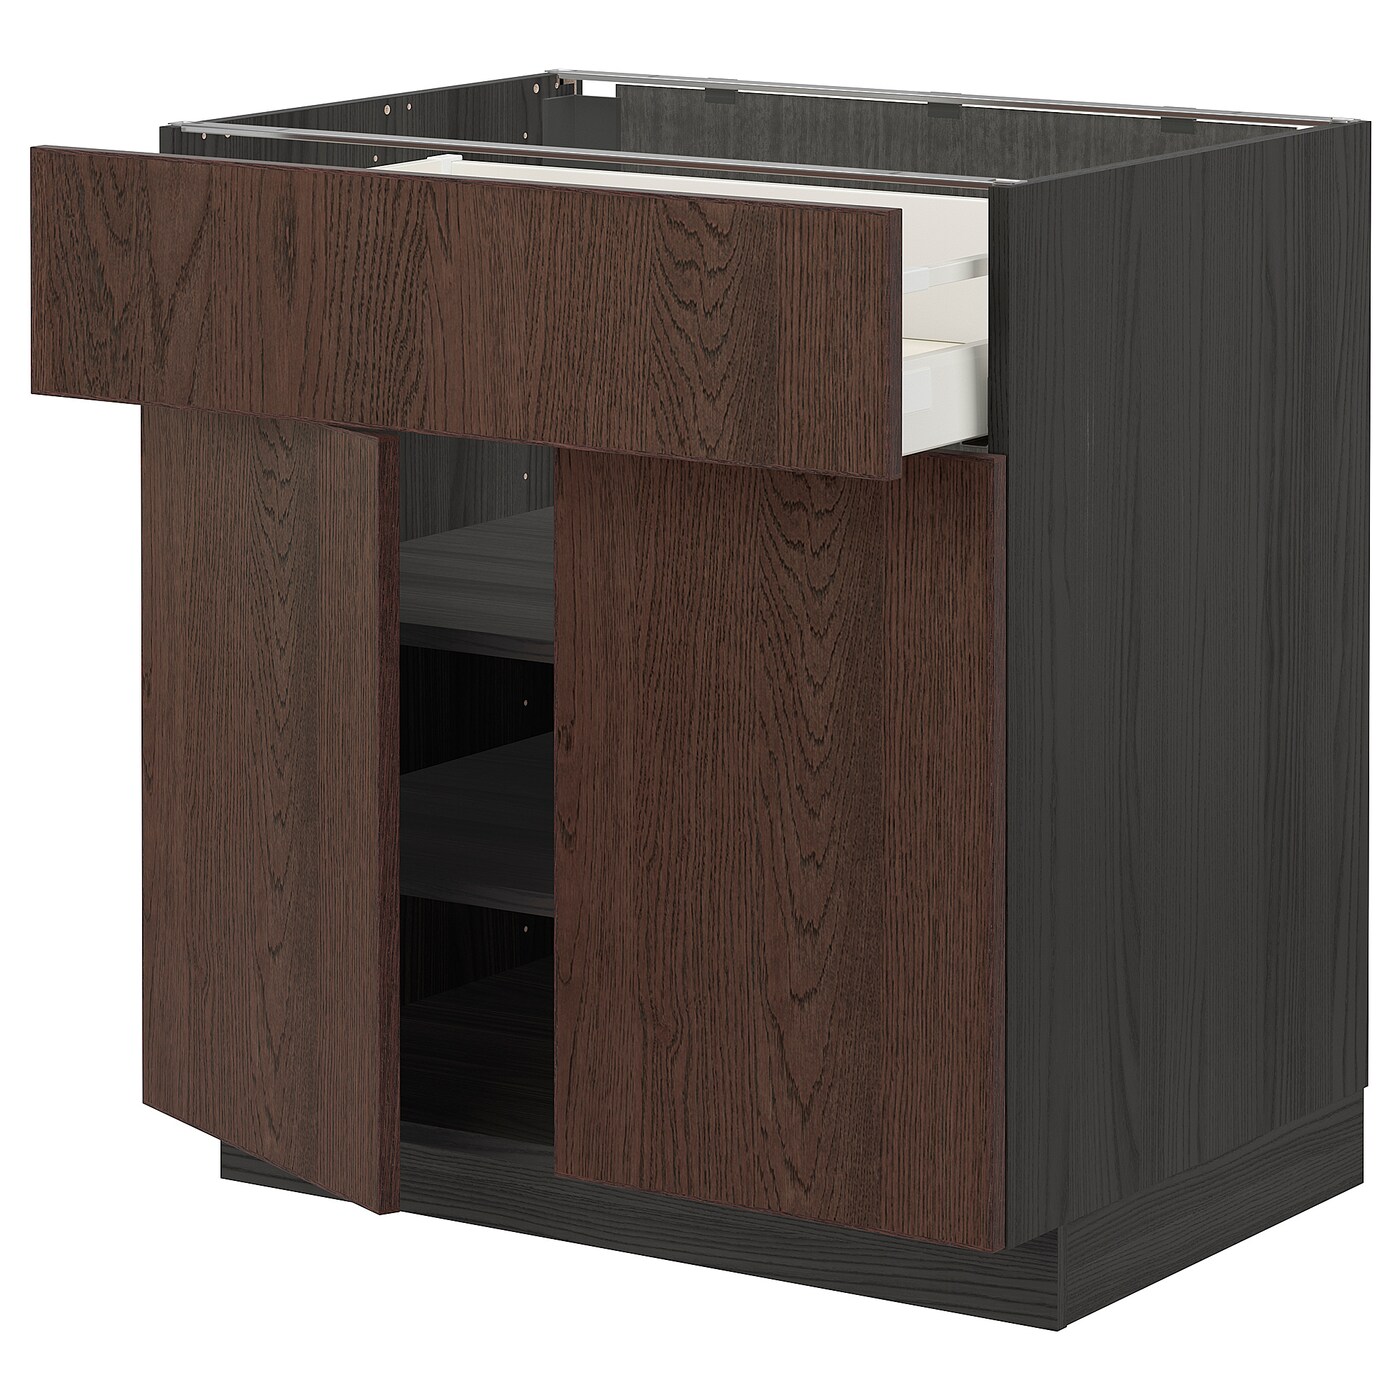 Напольный кухонный шкаф  - IKEA METOD MAXIMERA, 88x62x80см, коричневый/черный, МЕТОД МАКСИМЕРА ИКЕА